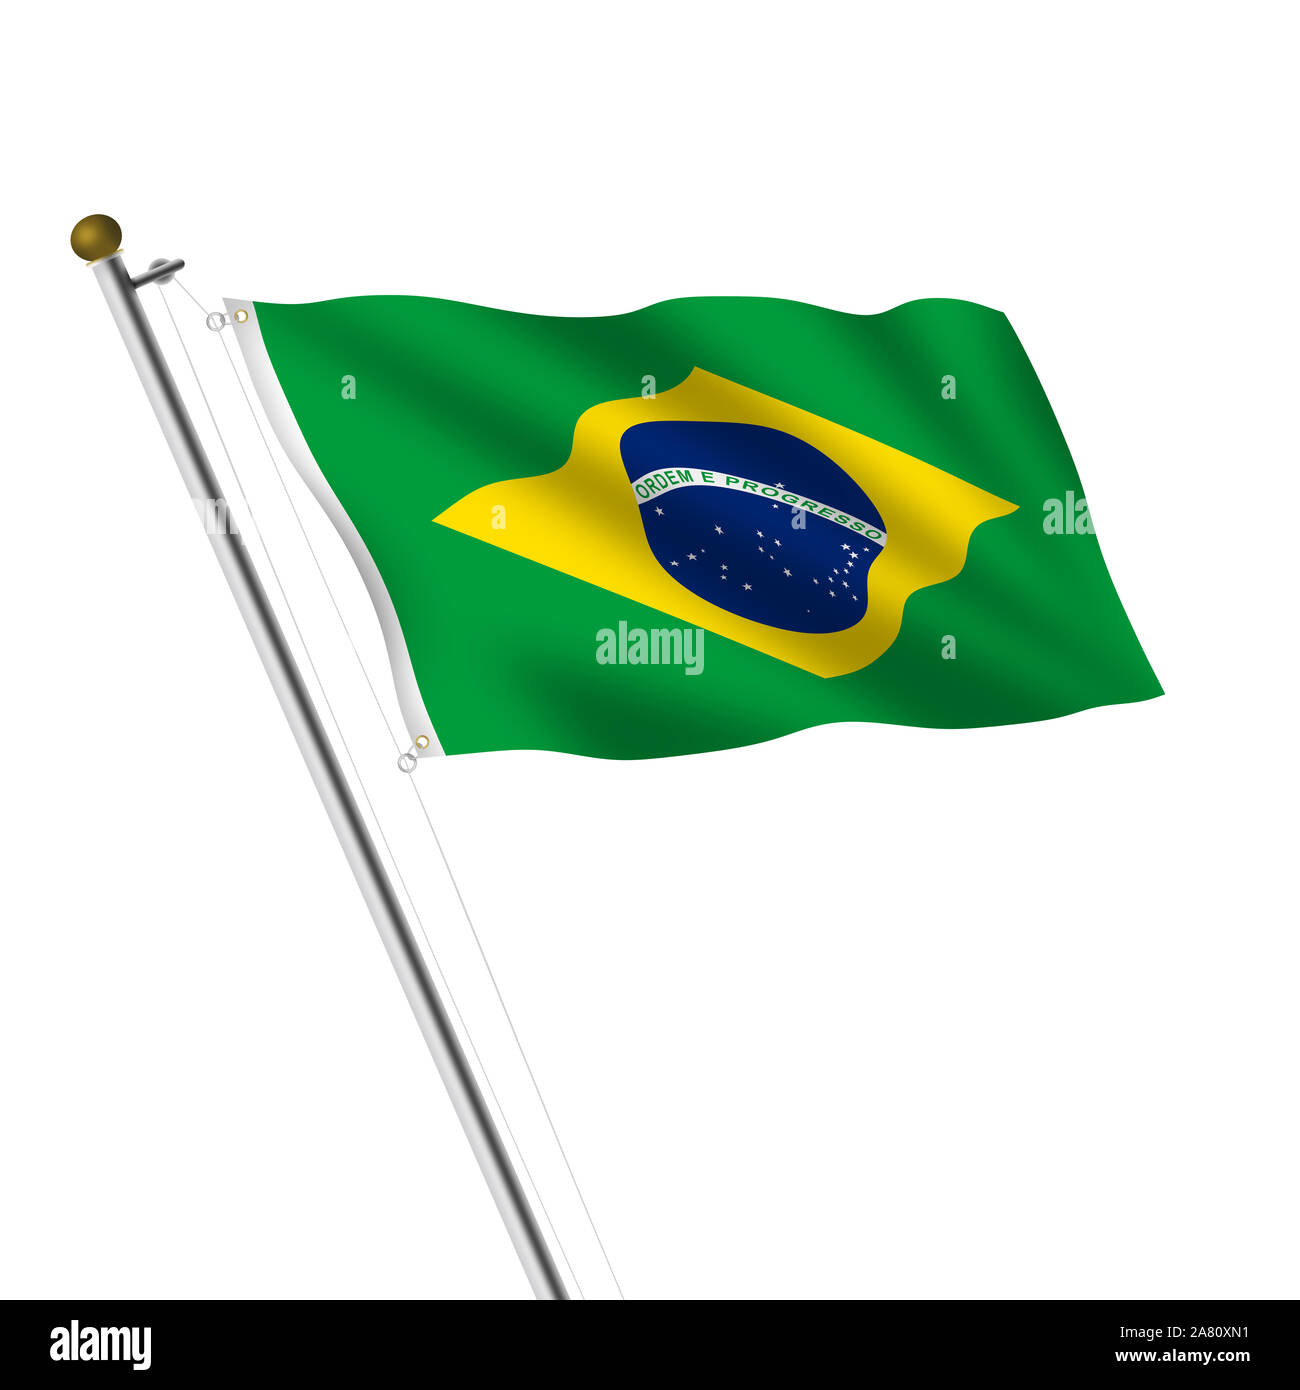 Un Brasil Brésil Drapeau vert e amarela illustration on white with clipping path Banque D'Images